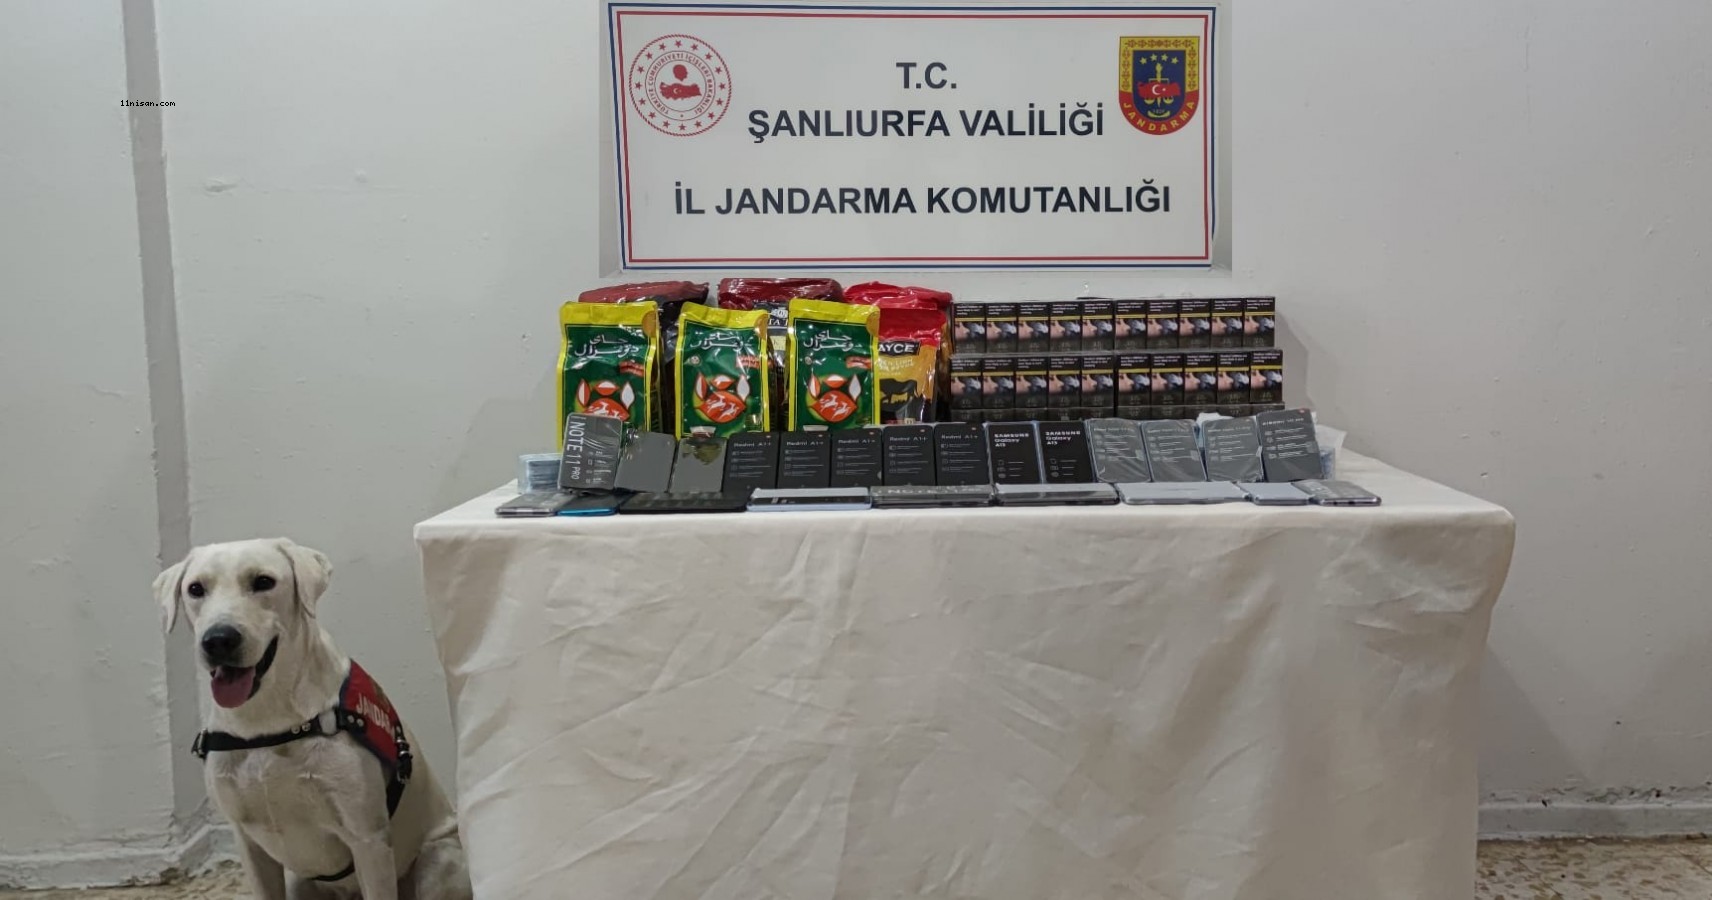 Viranşehir'de kaçak cep telefonu, sigara ve çay ele geçirildi;